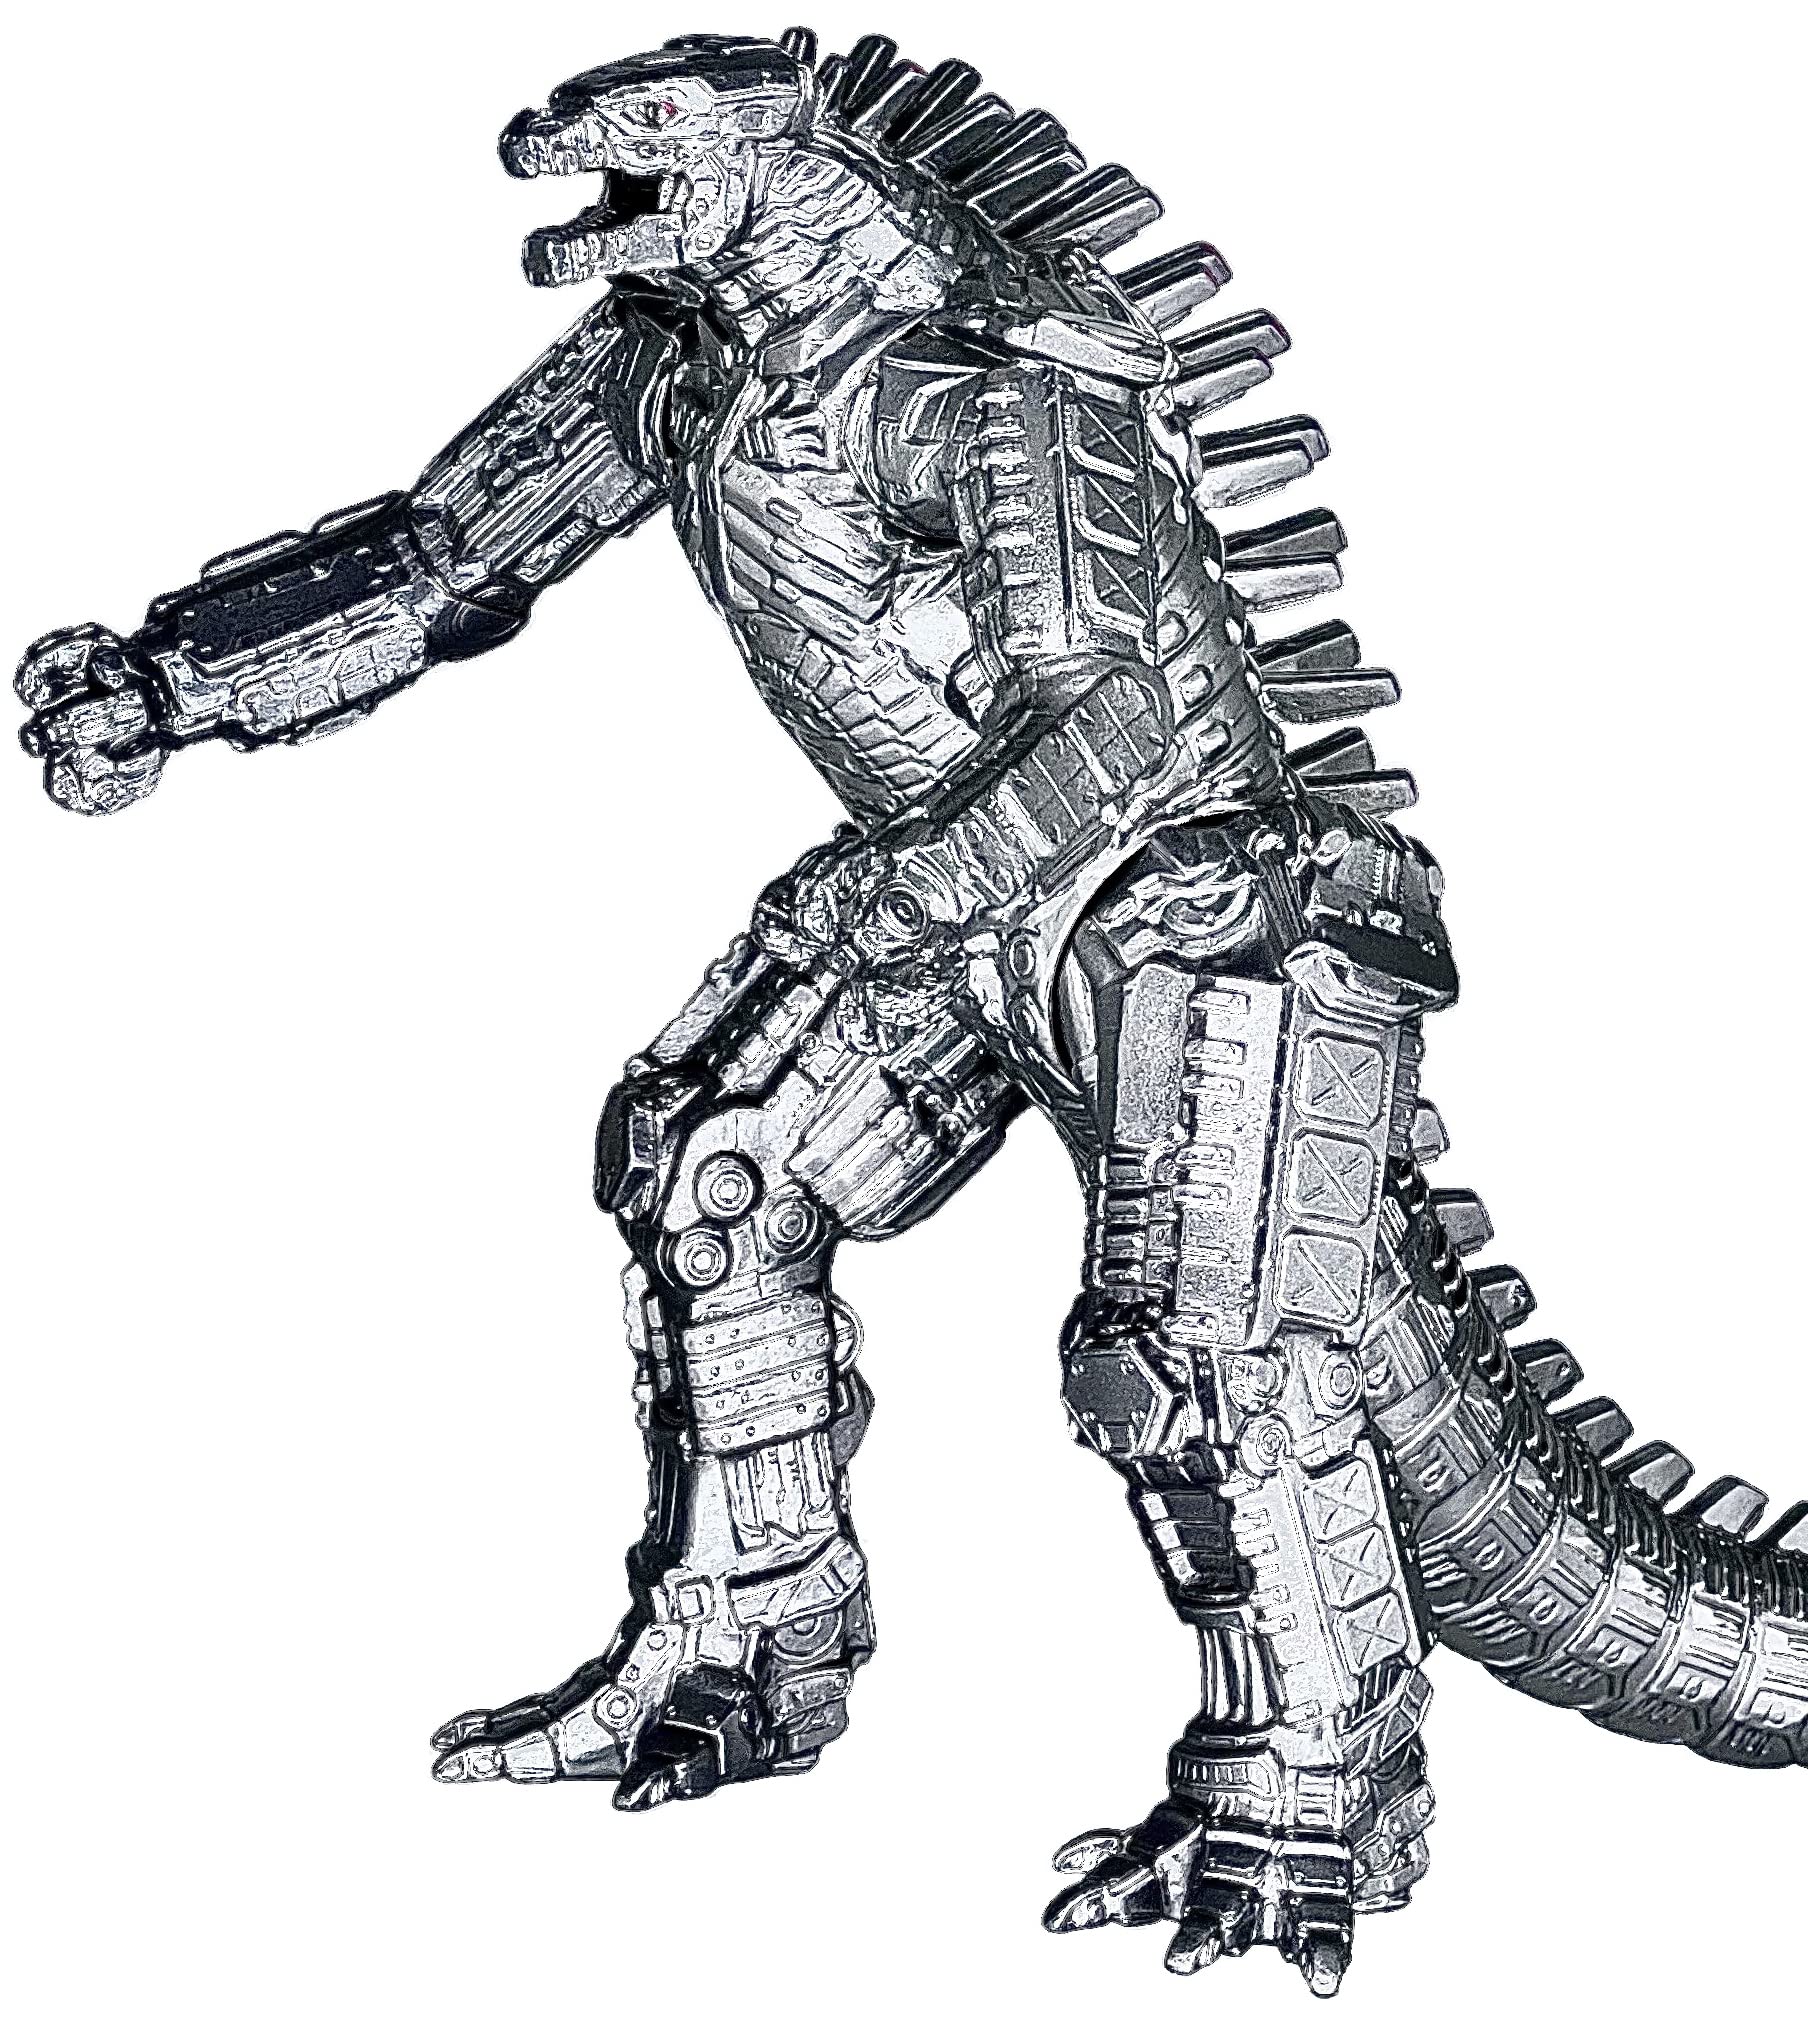 Mecha Godzilla: Chiến đấu trở nên hấp dẫn hơn bao giờ hết với MechaGodzilla - bản sao máy móc của kẻ thù đáng sợ nhất của Godzilla. Hãy xem hình ảnh và chiêm ngưỡng sự hoàn hảo của MechaGodzilla, cùng các tính năng và khả năng đáng kinh ngạc.